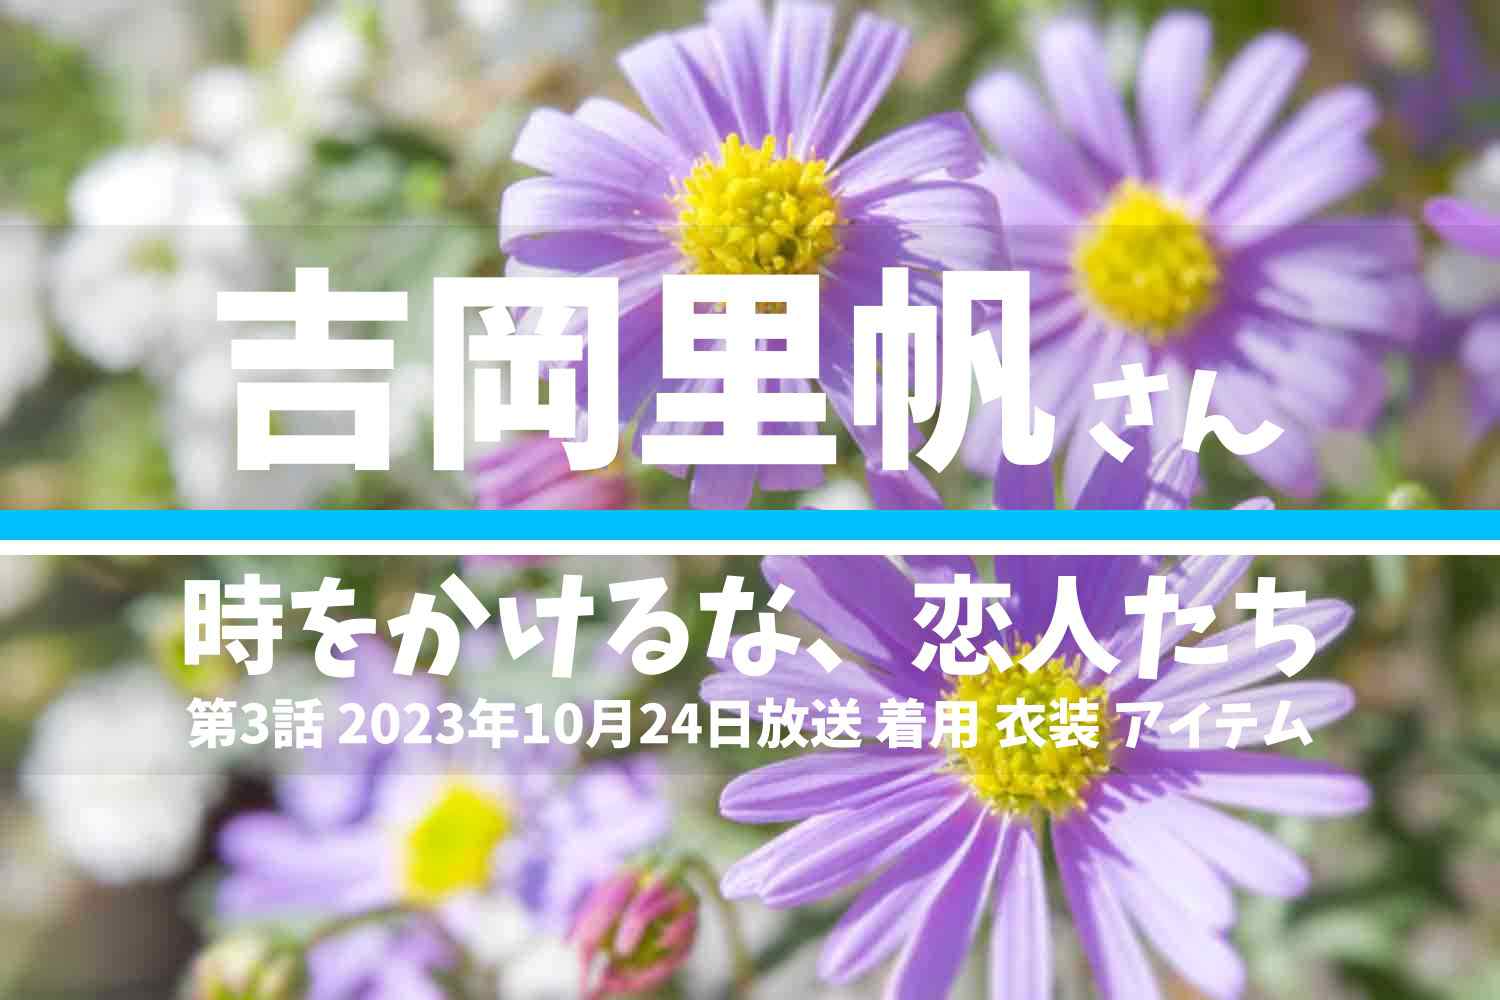 時をかけるな、恋人たち 吉岡里帆さん テレビドラマ 衣装 2023年10月24日放送